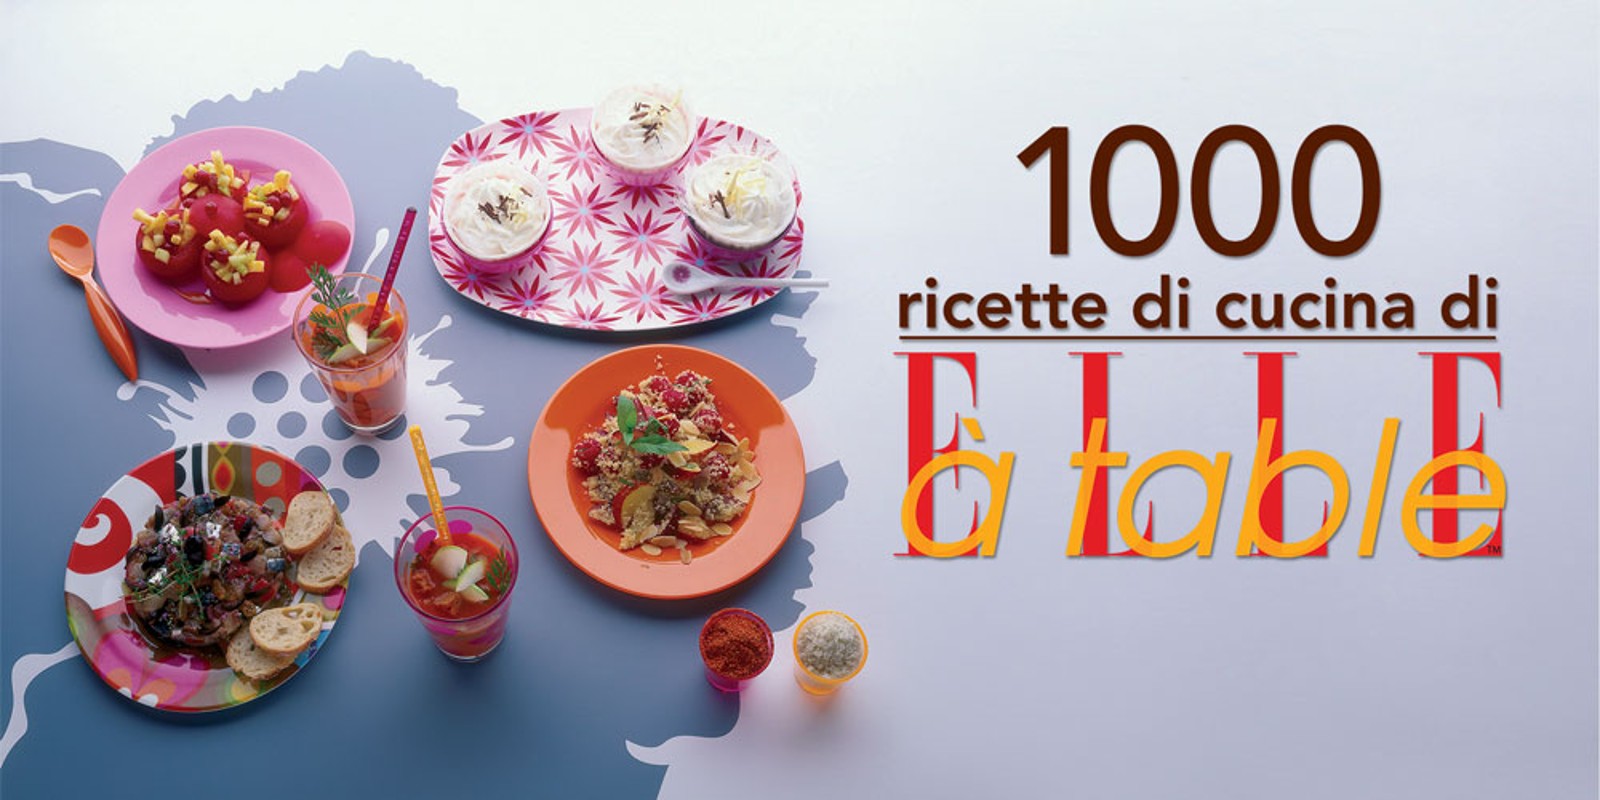 1000 ricette di cucina di ELLE à table